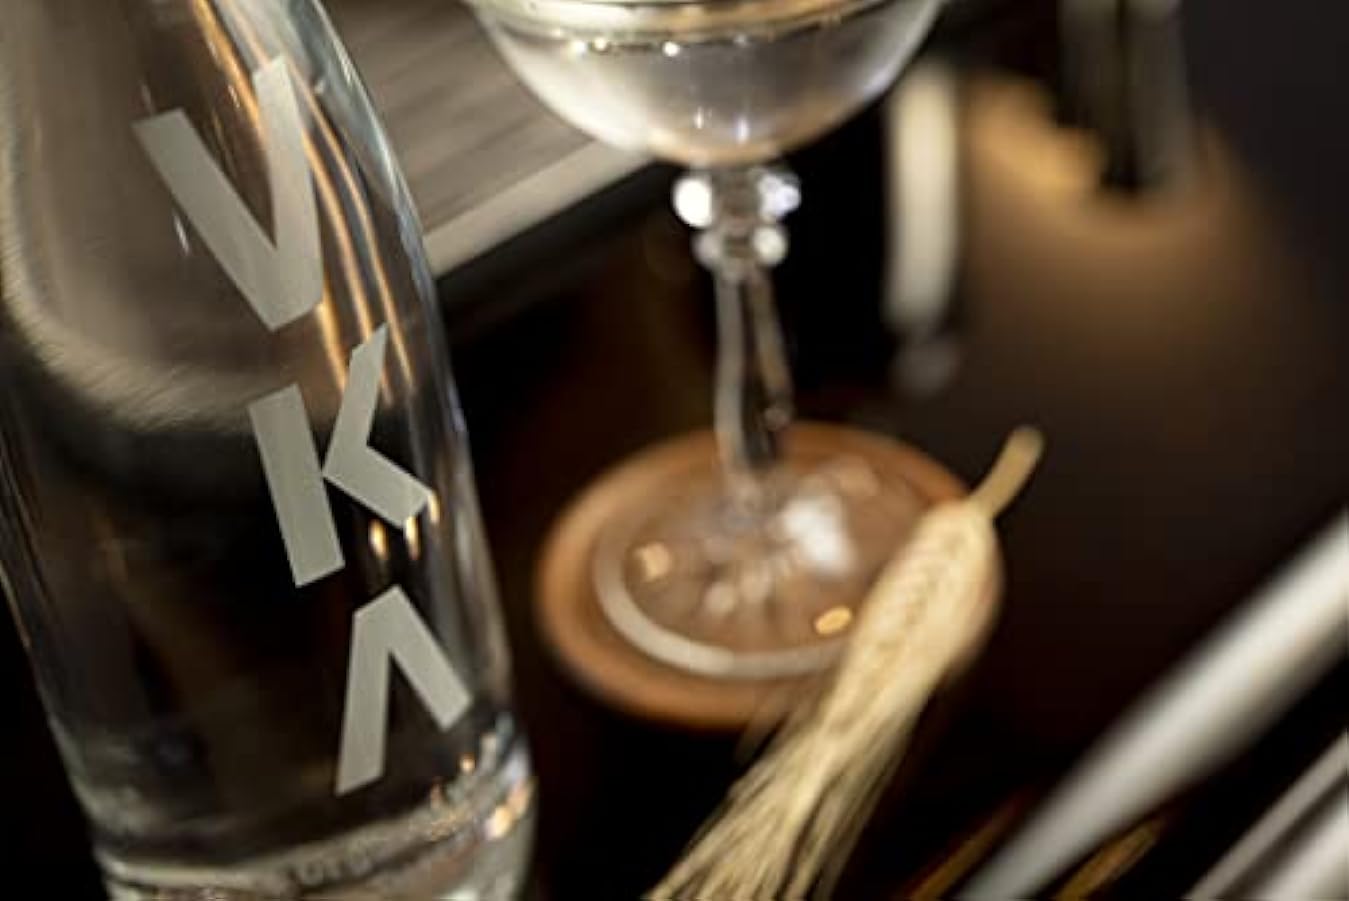 Vka Vka Organic Vodka - 700 Ml 823543998